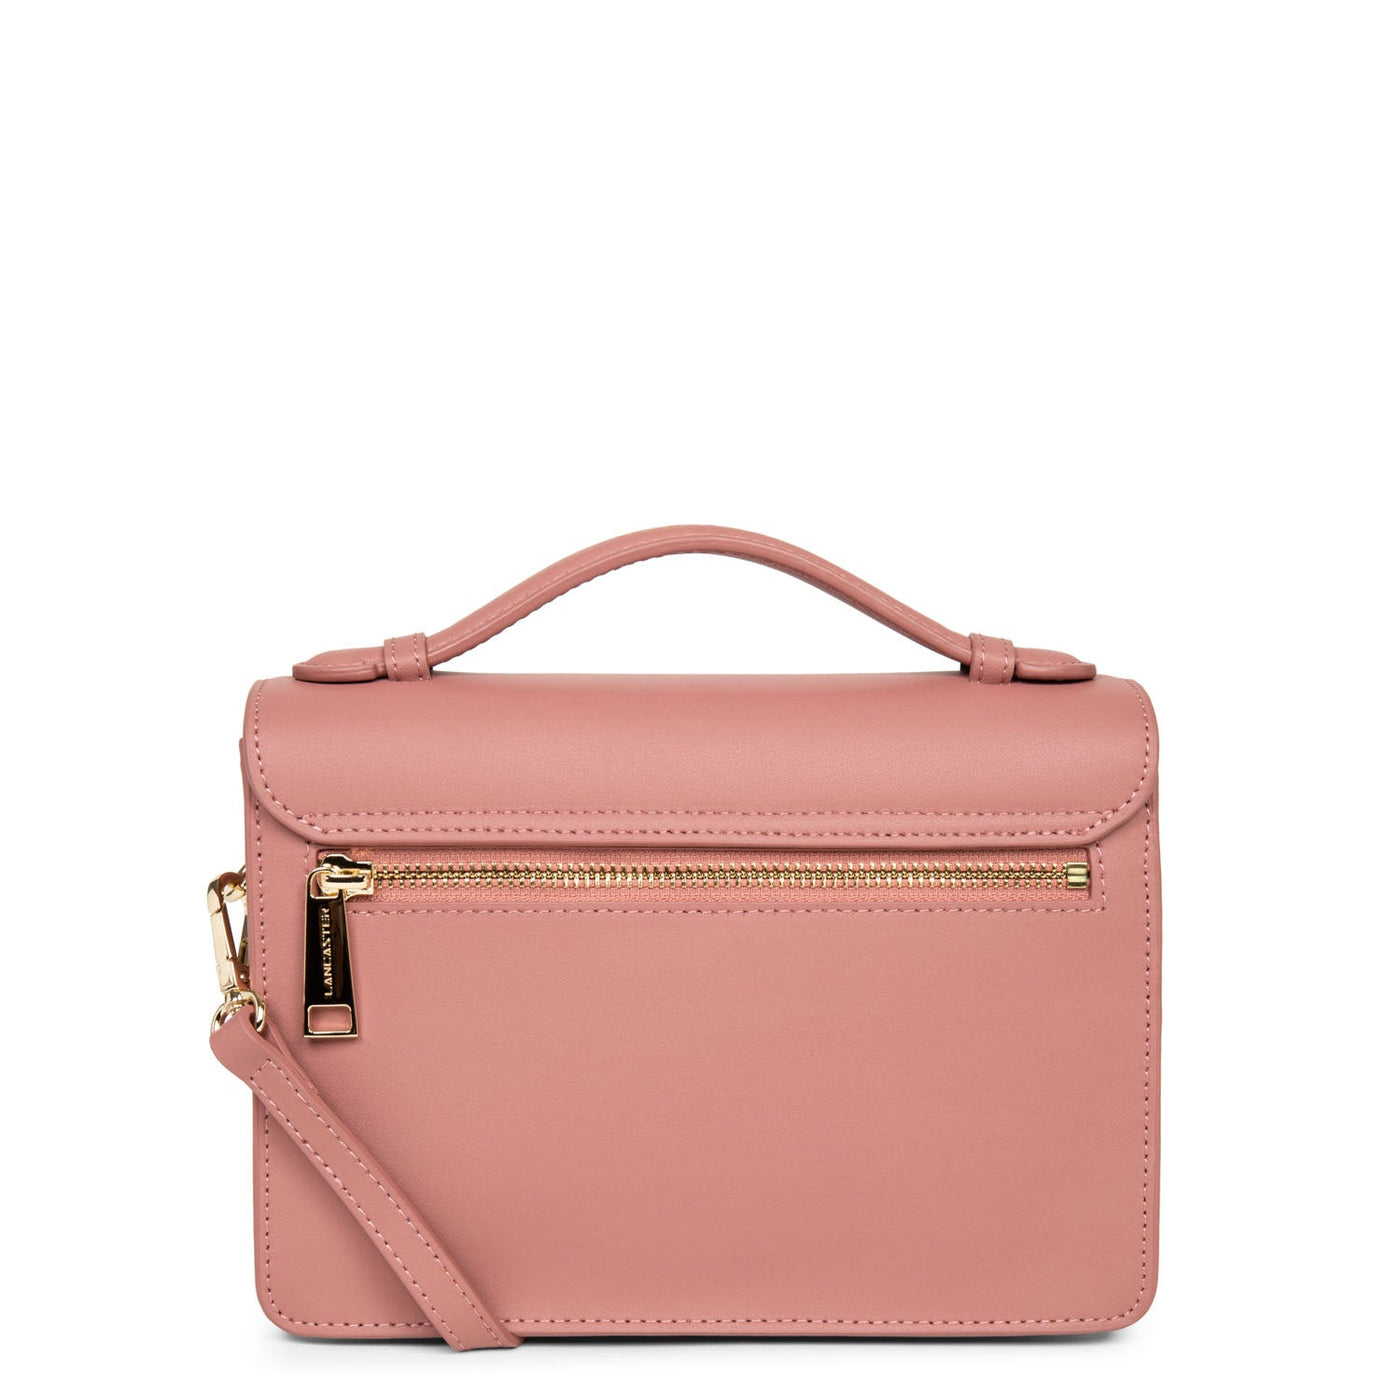 handbag - city philos #couleur_rose-cendre